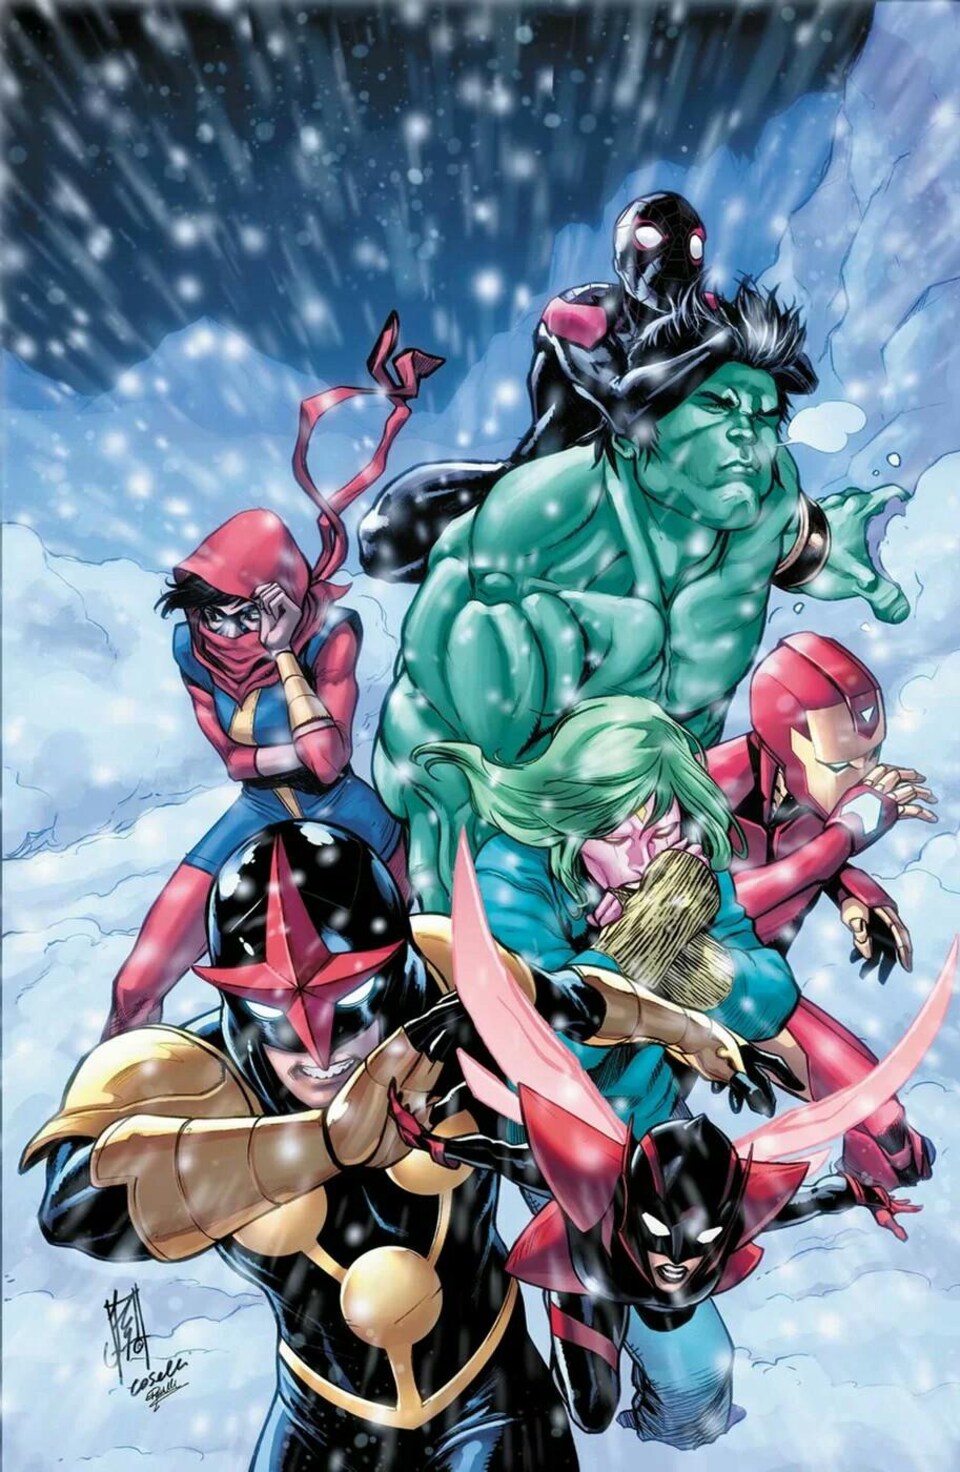 Dessin représentant plusieurs superhéros dans une tempête de neige.